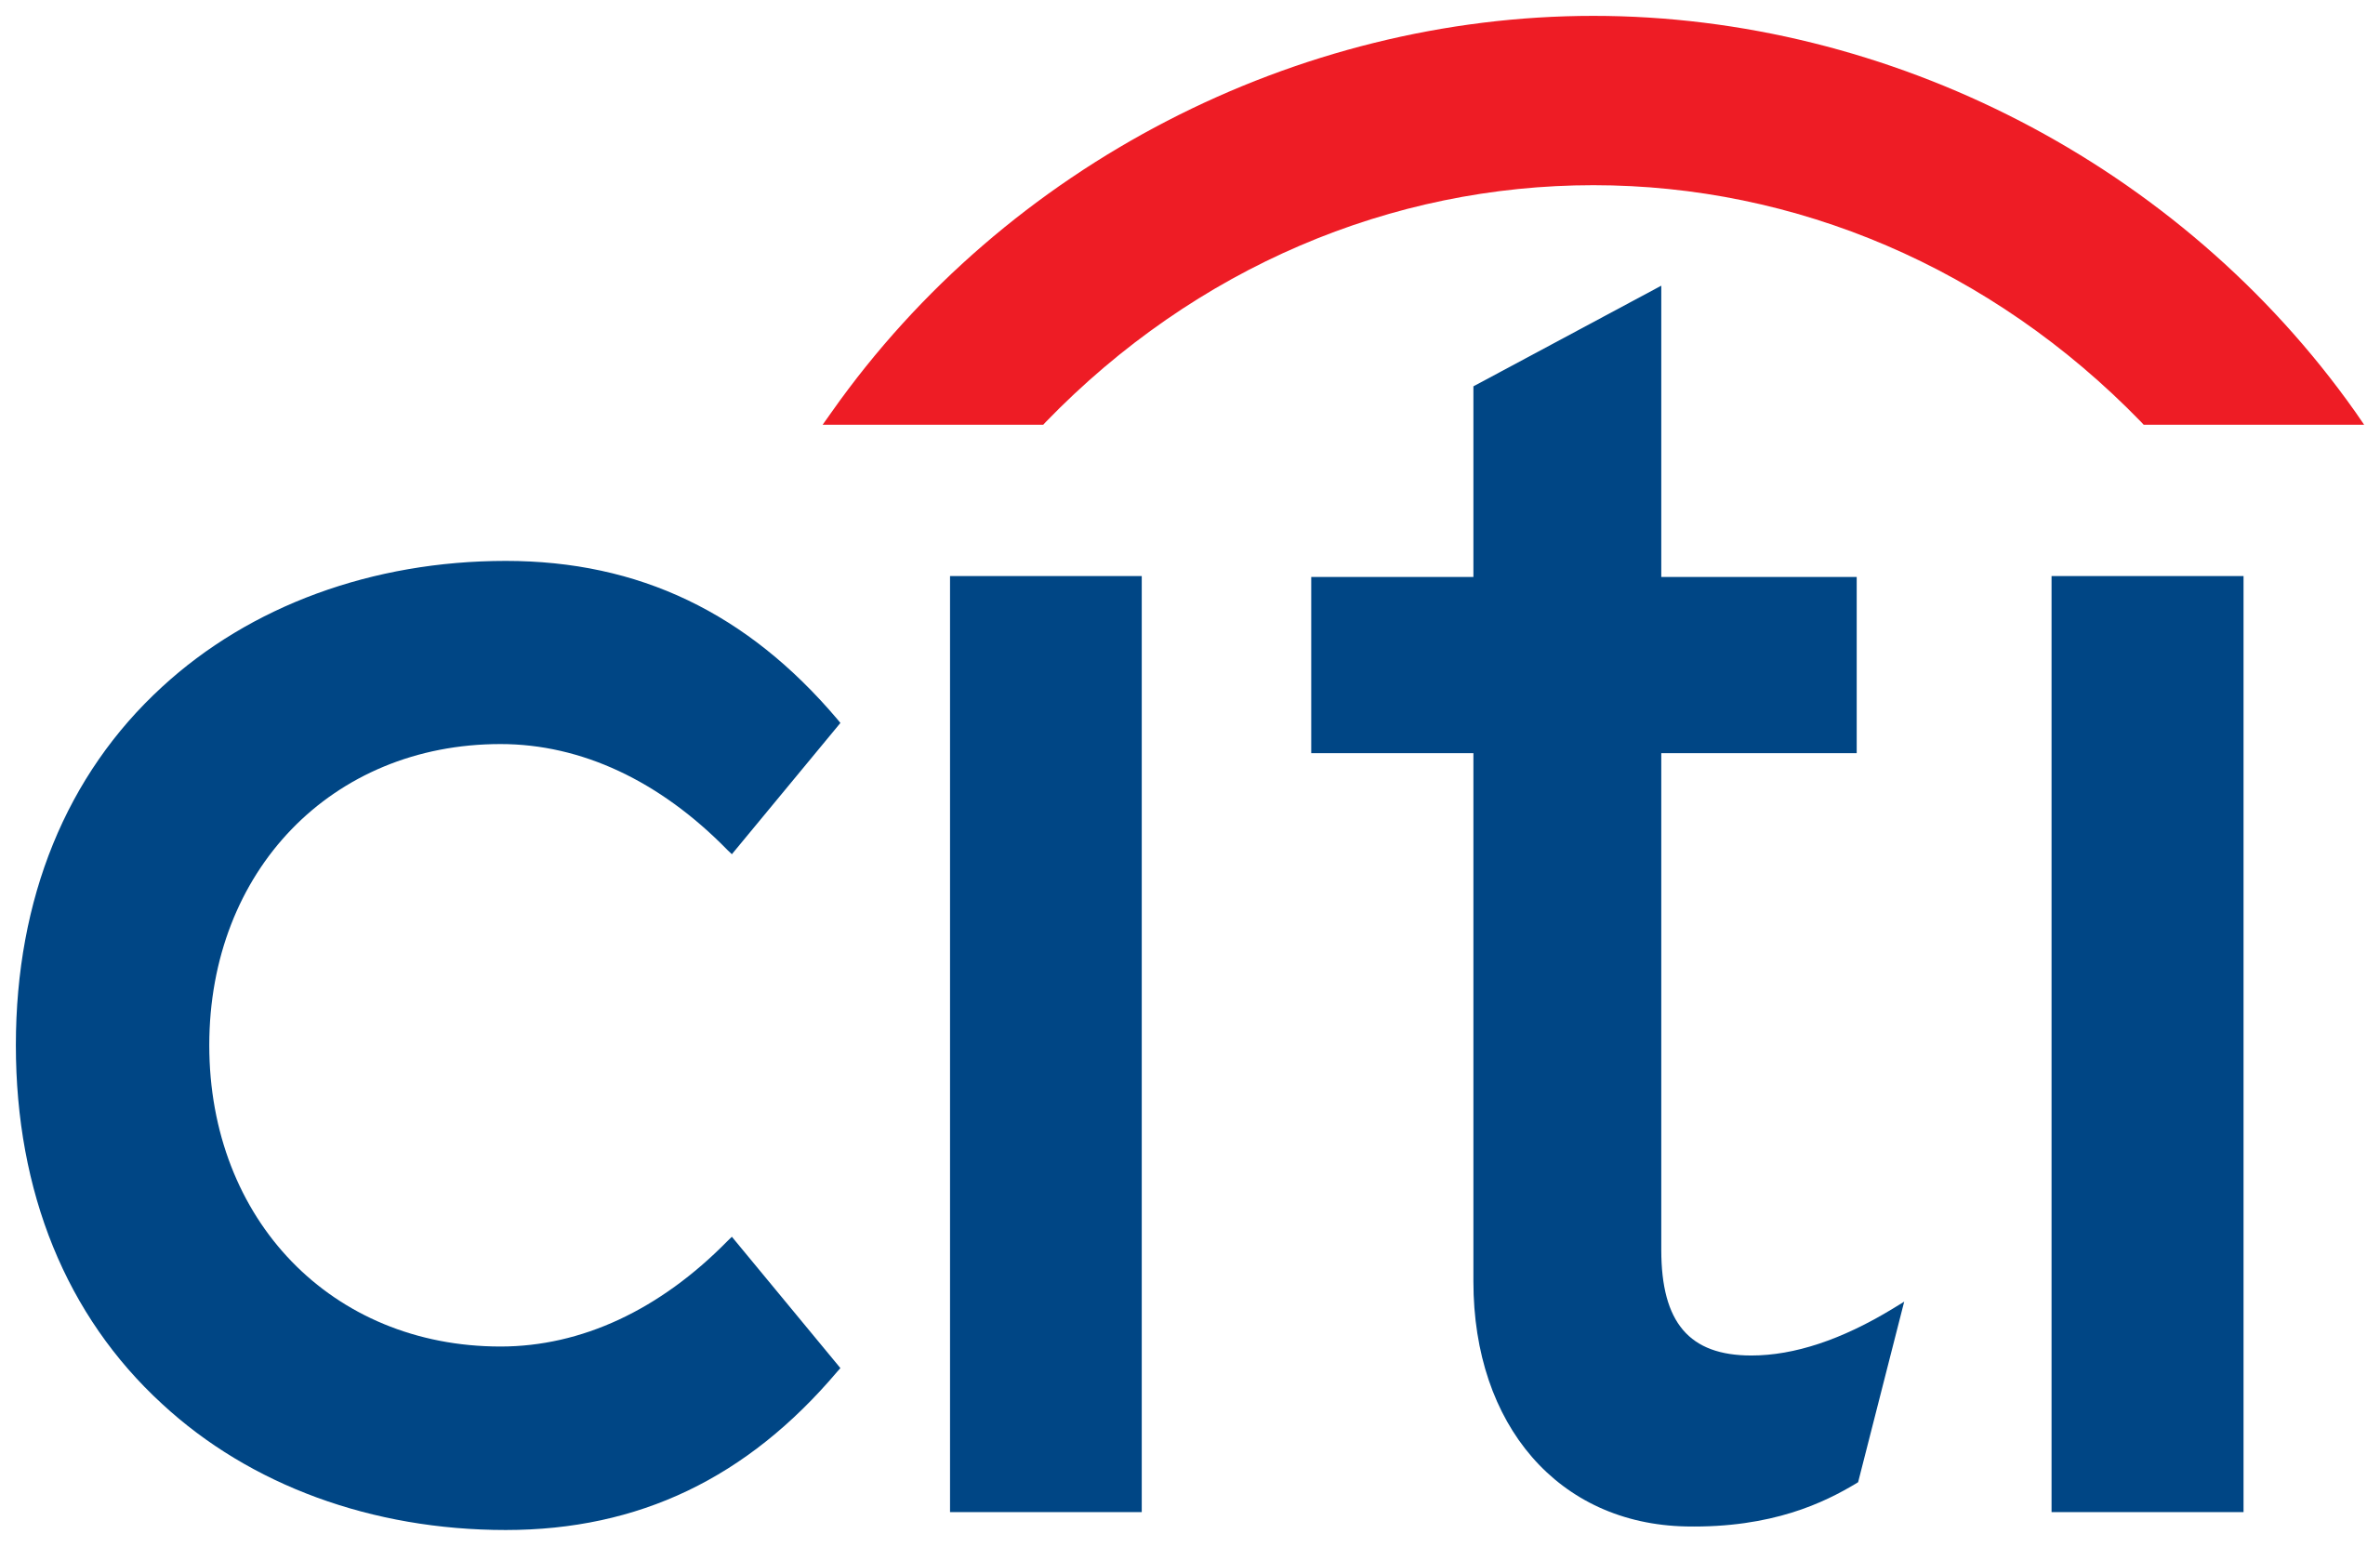 Official partner logo for Citi